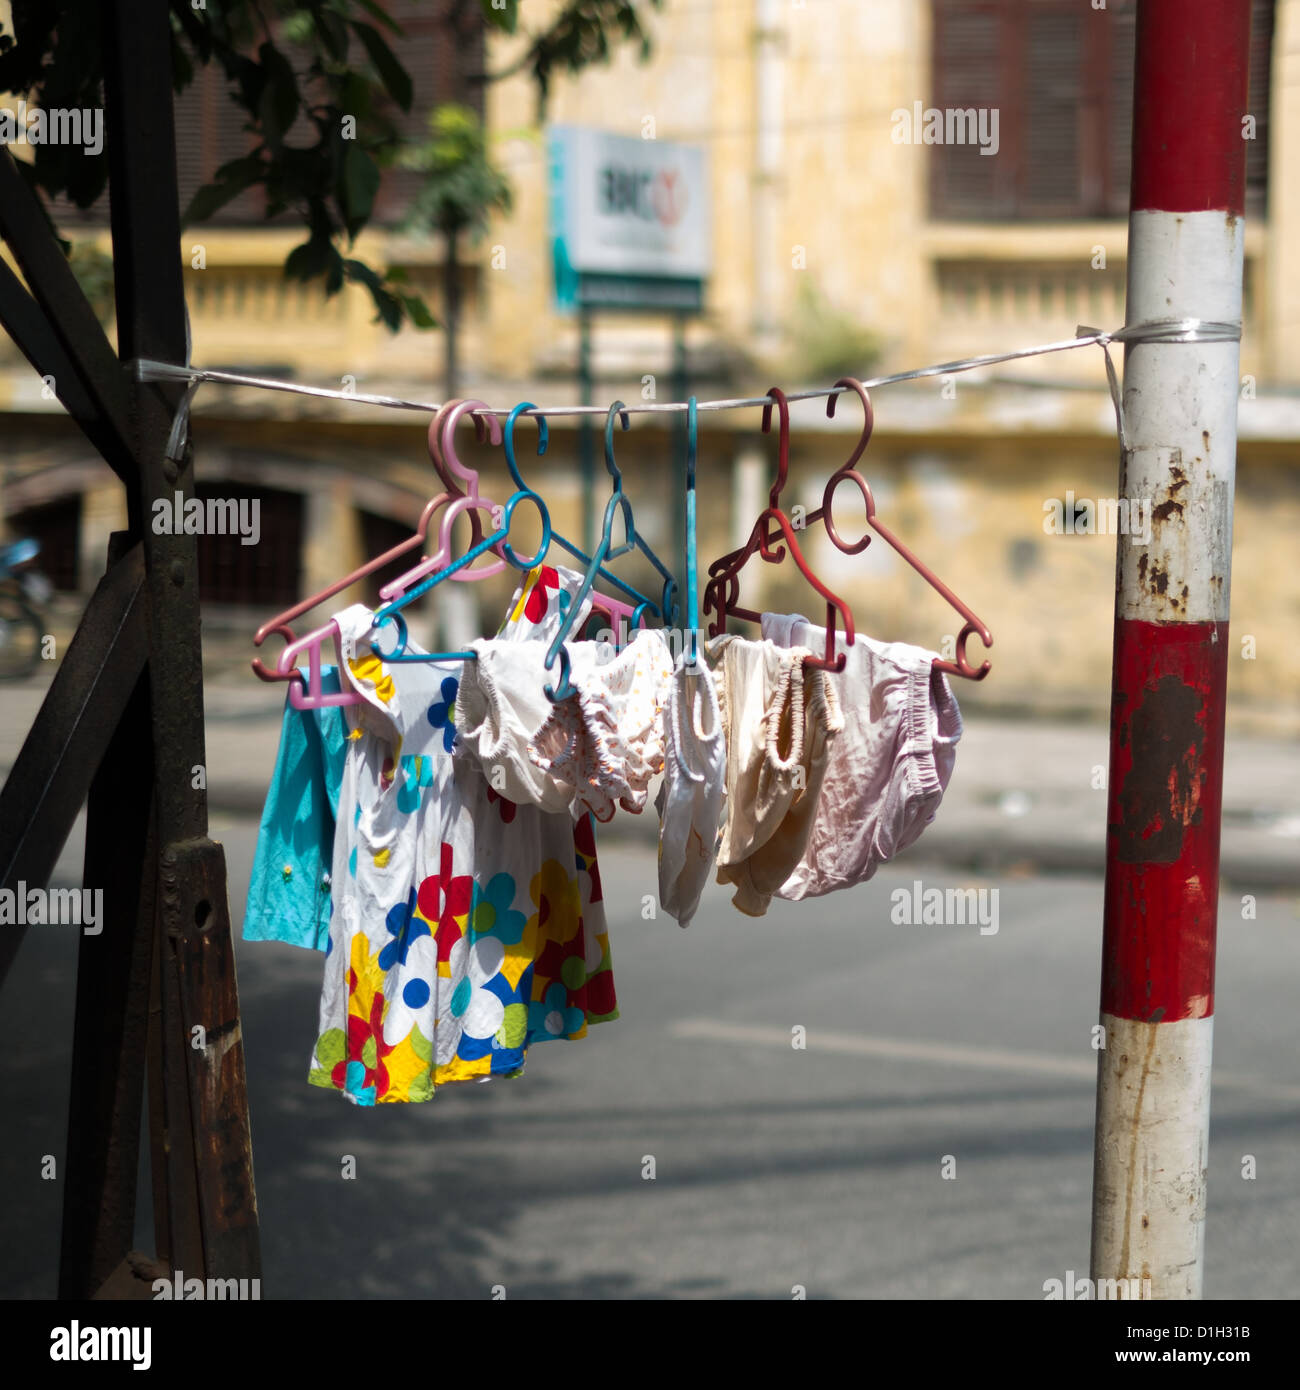 La ropa colgada en la línea de lavado a seco Fotografía de stock - Alamy